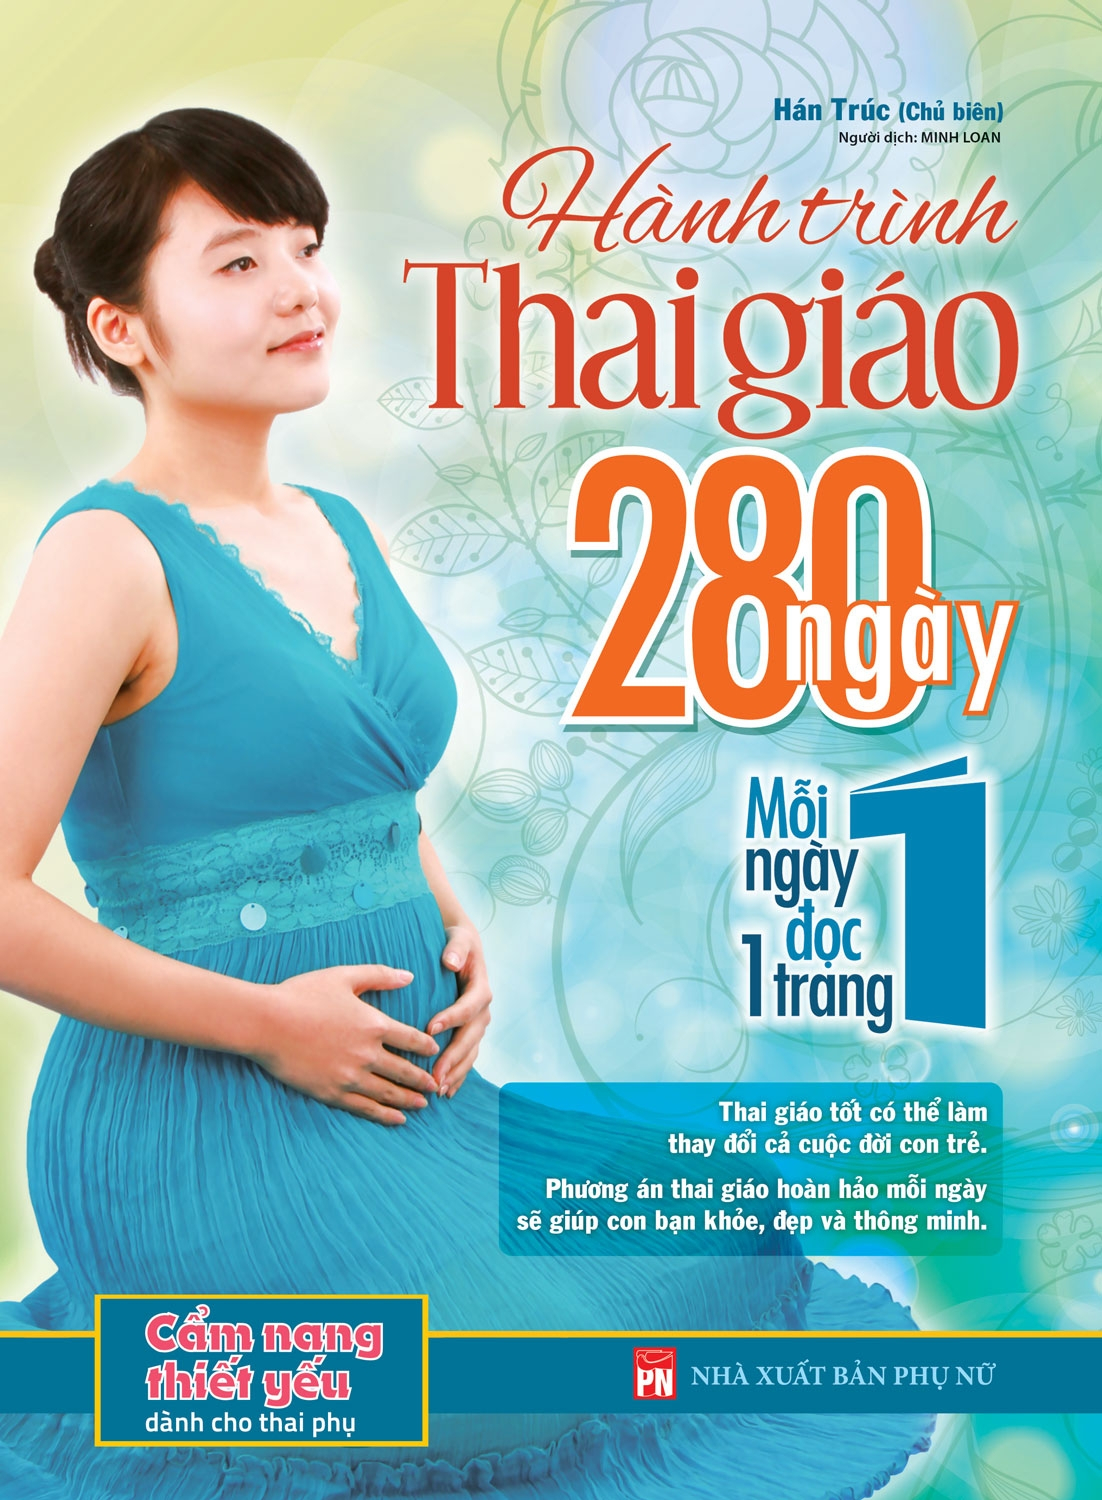 Combo Sách Hành Trình Thai Giáo 280 Ngày - Mỗi Ngày Đọc Một Trang Lần Đầu Làm Mẹ PDF